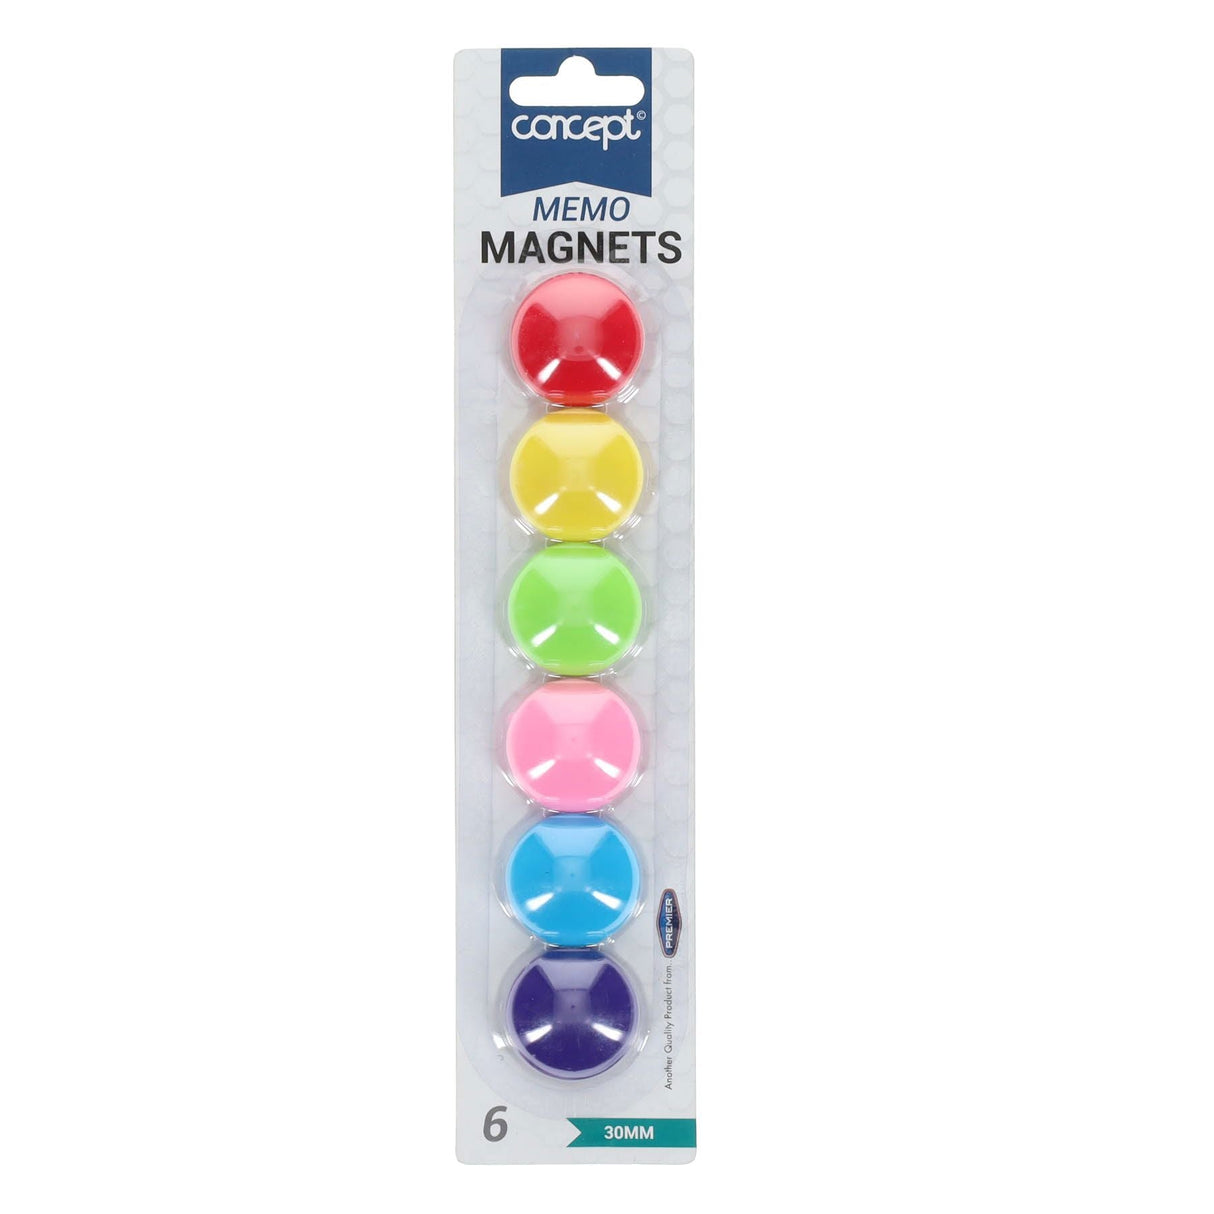 Premier Office 33mm Magnet Memo Holders - Pastel - Pack of 6 | Stationery Shop UK